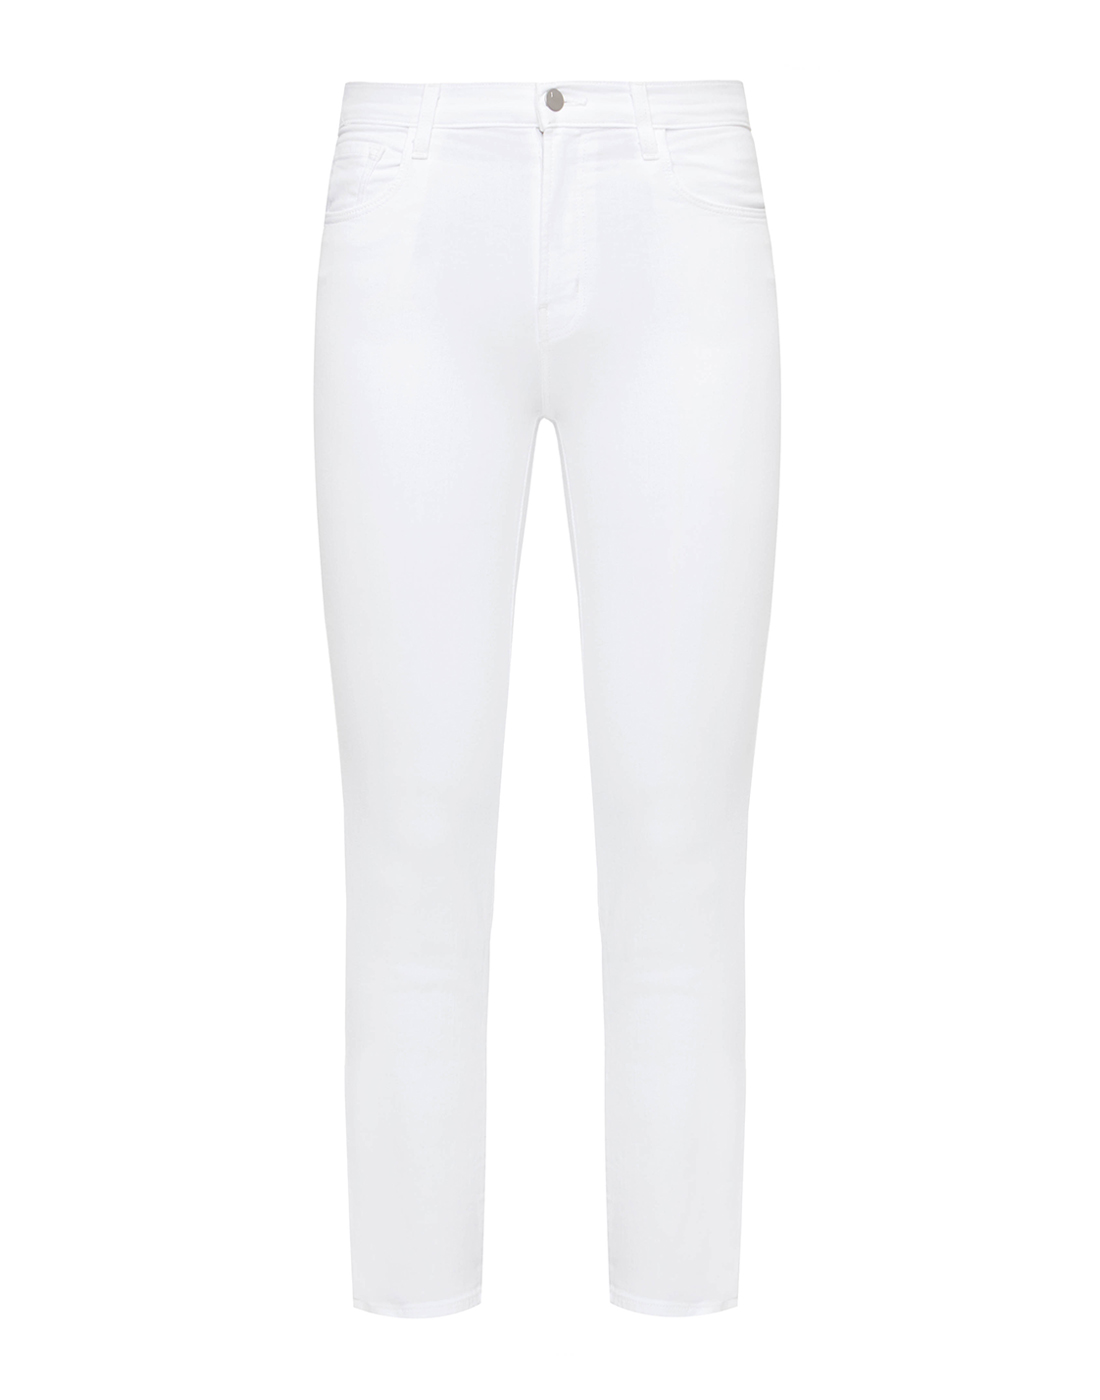 Женские белые джинсы J BRAND SJB003263-1